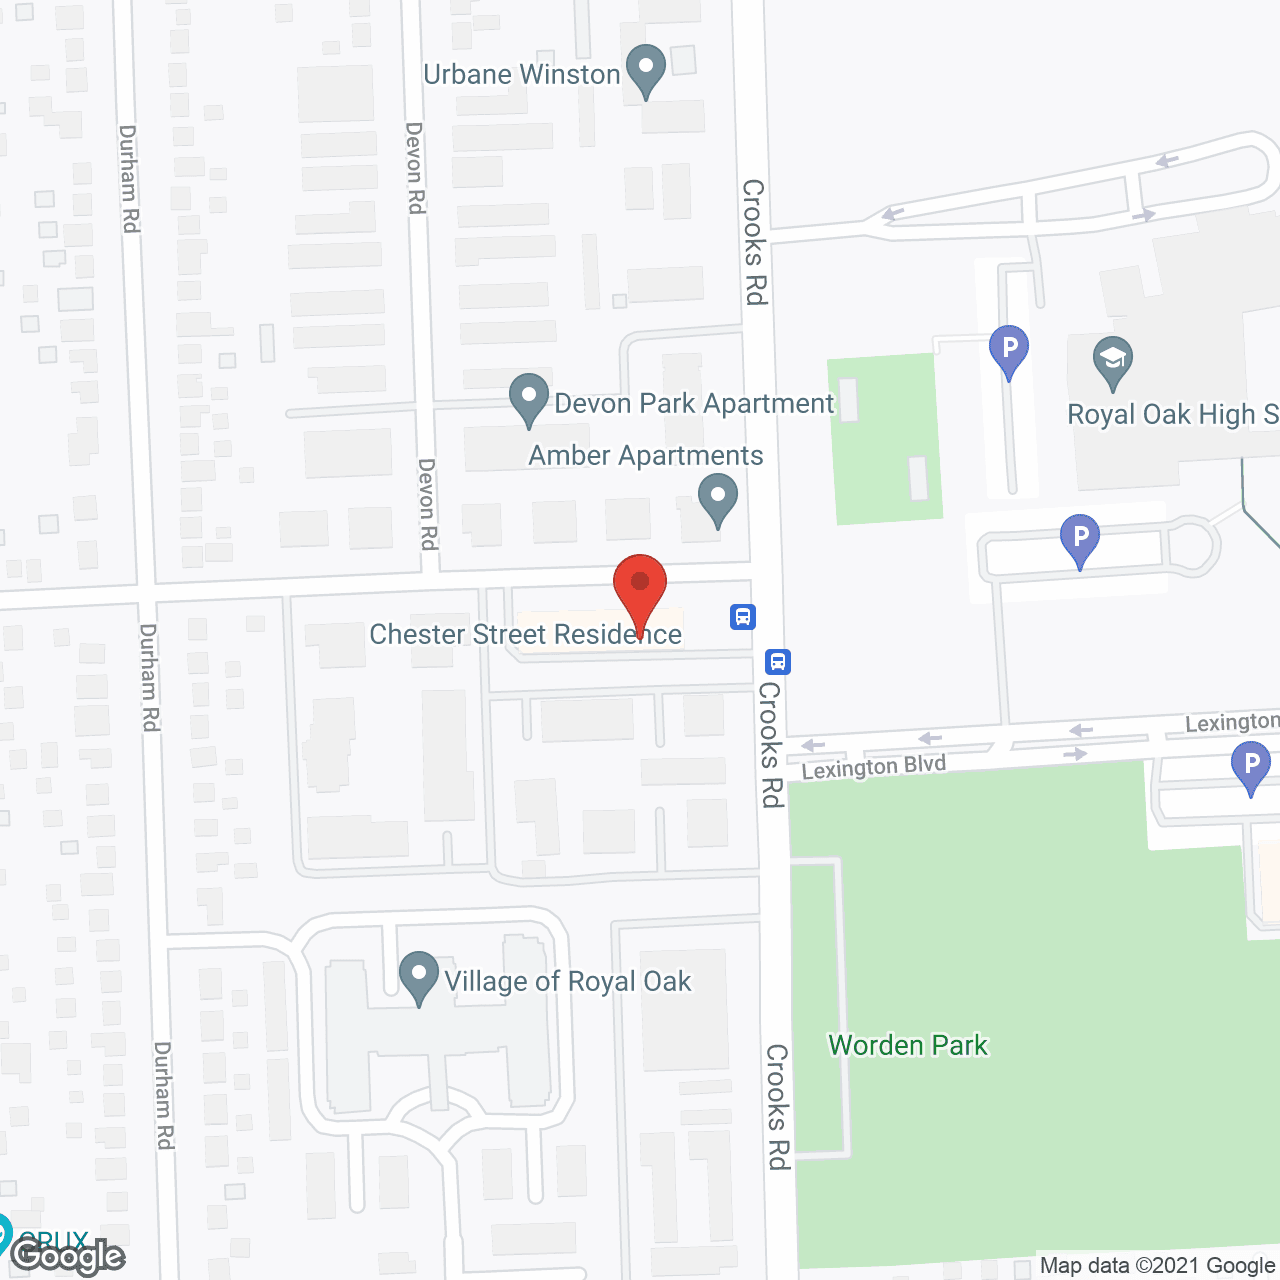 Chester Street Residence in google map